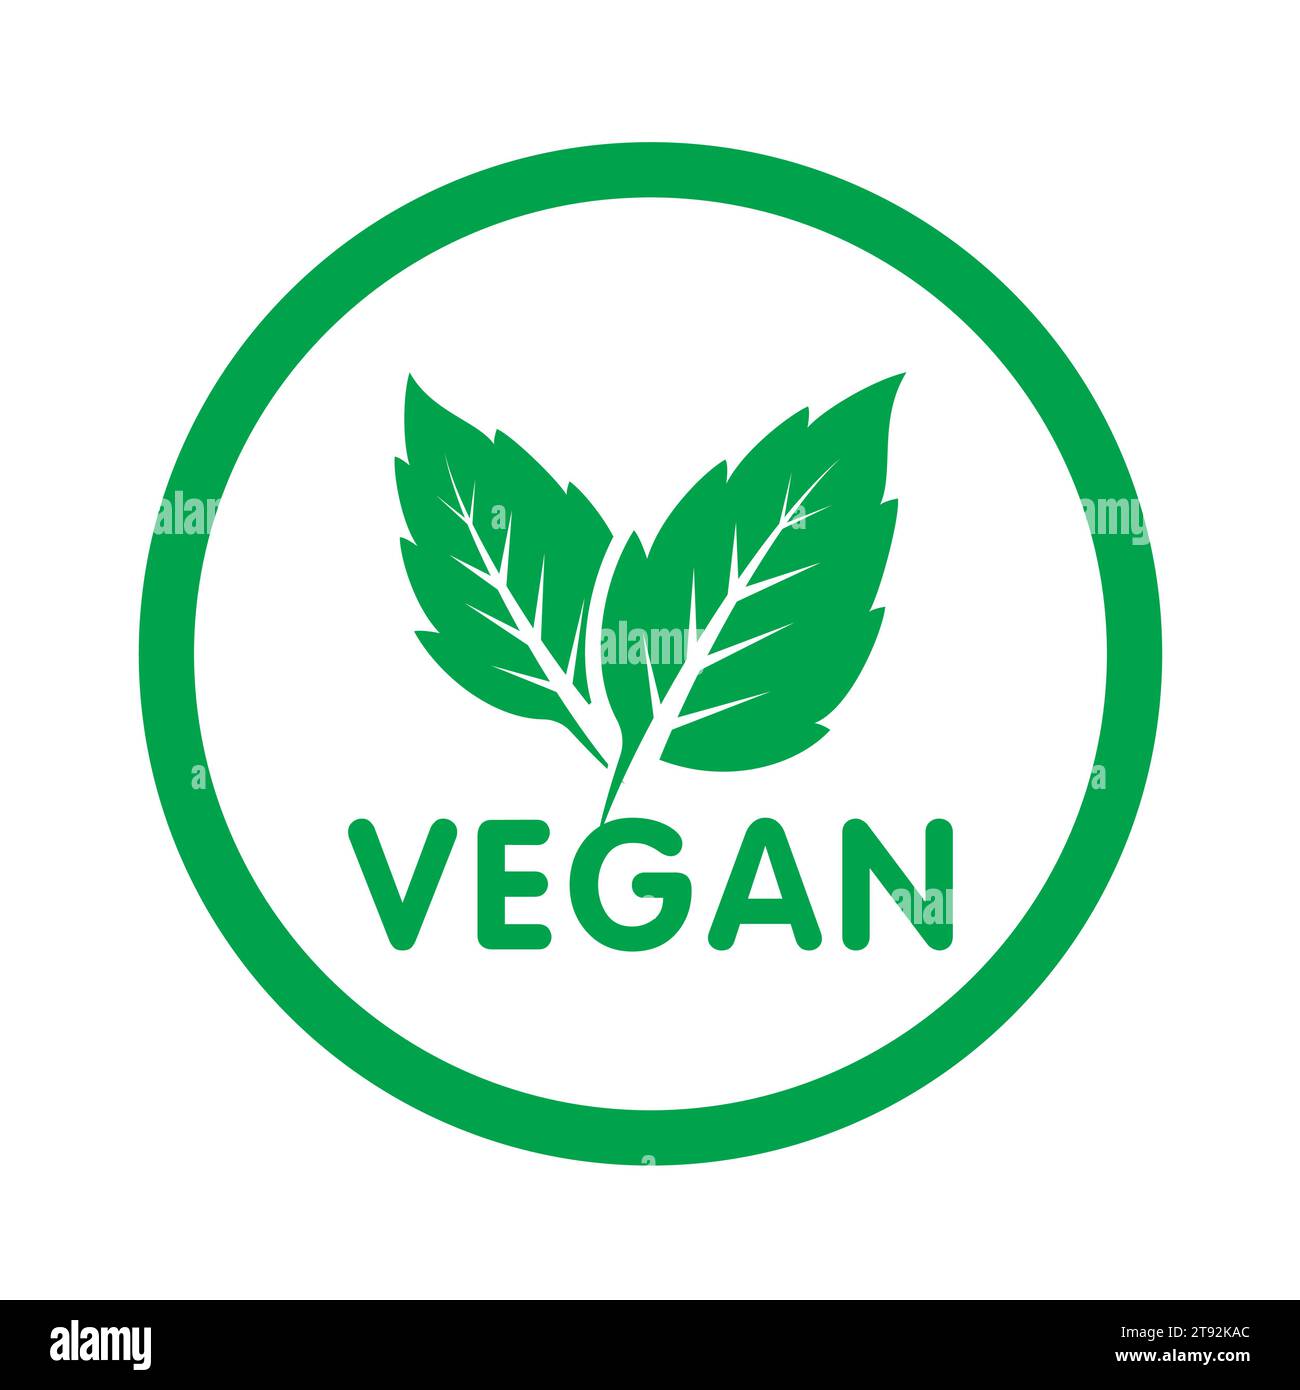 Vegane Ernährungsdiät-Symbol. Bio-, Bio-, Öko-Symbol. Vegan, kein Fleisch, laktosefrei, gesund, frisch und gewaltfrei. Runder grüner Vektor-Illustration Stock Vektor